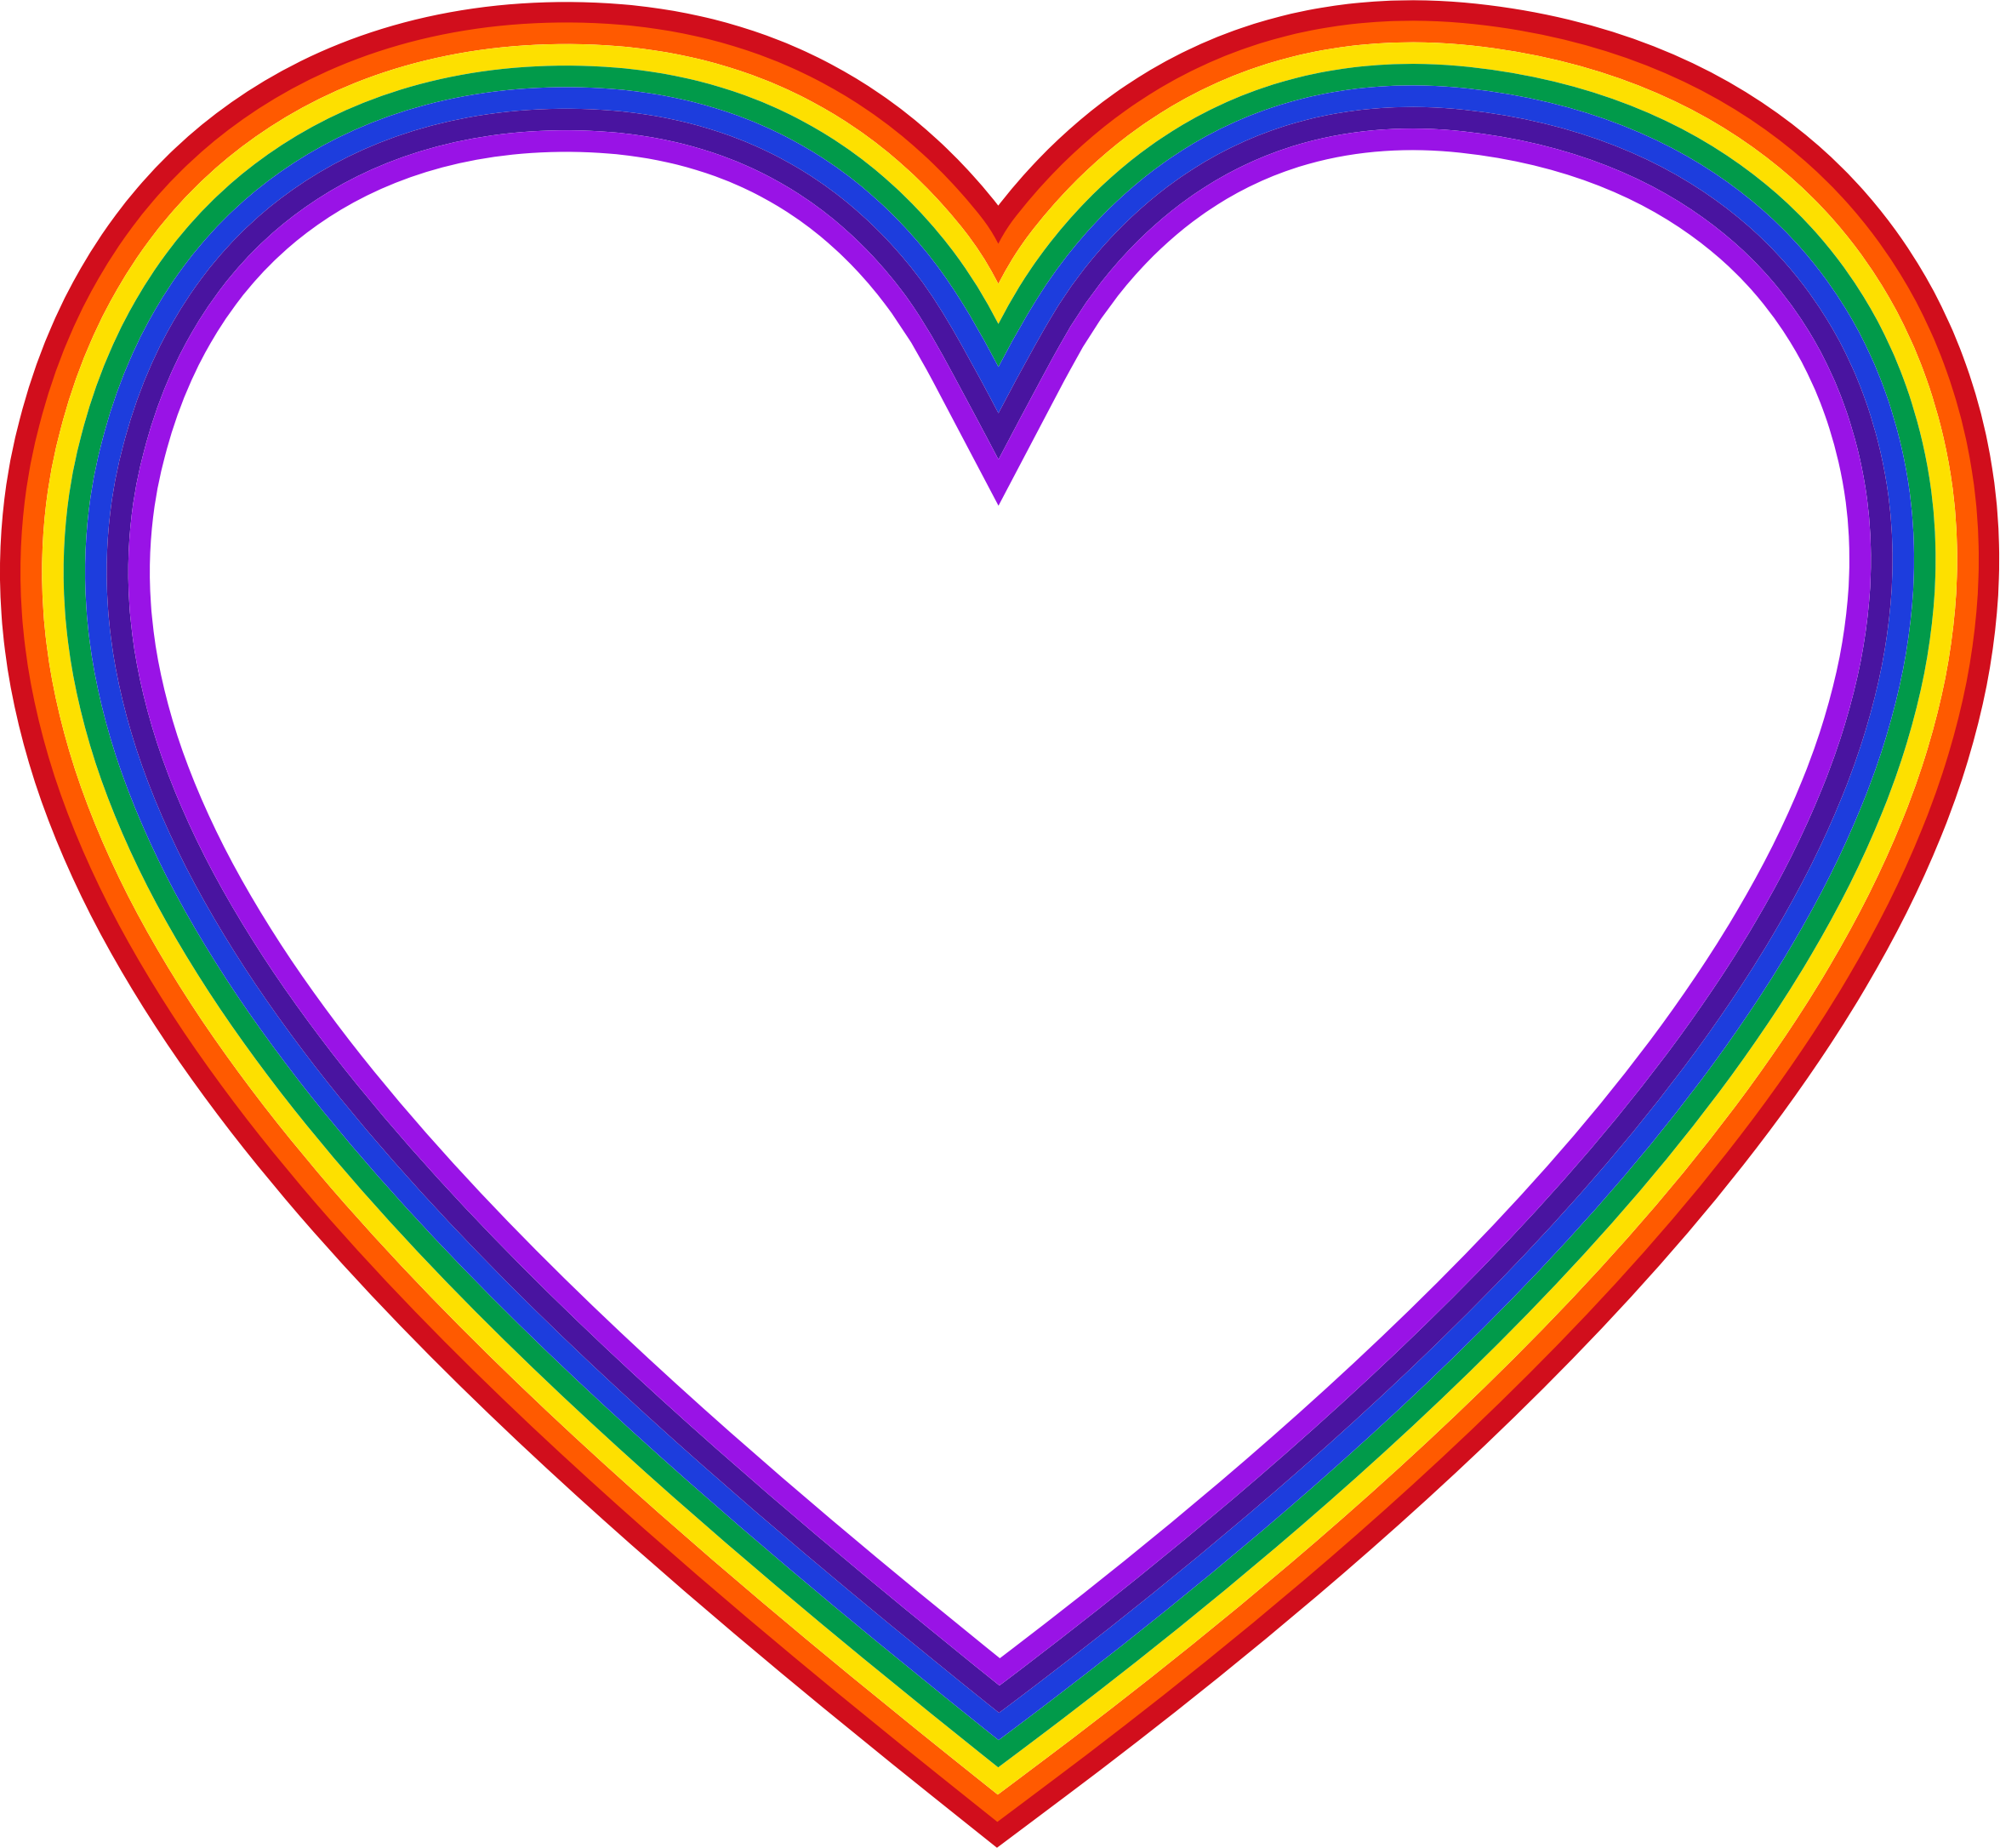 free rainbow heart clip art - photo #27